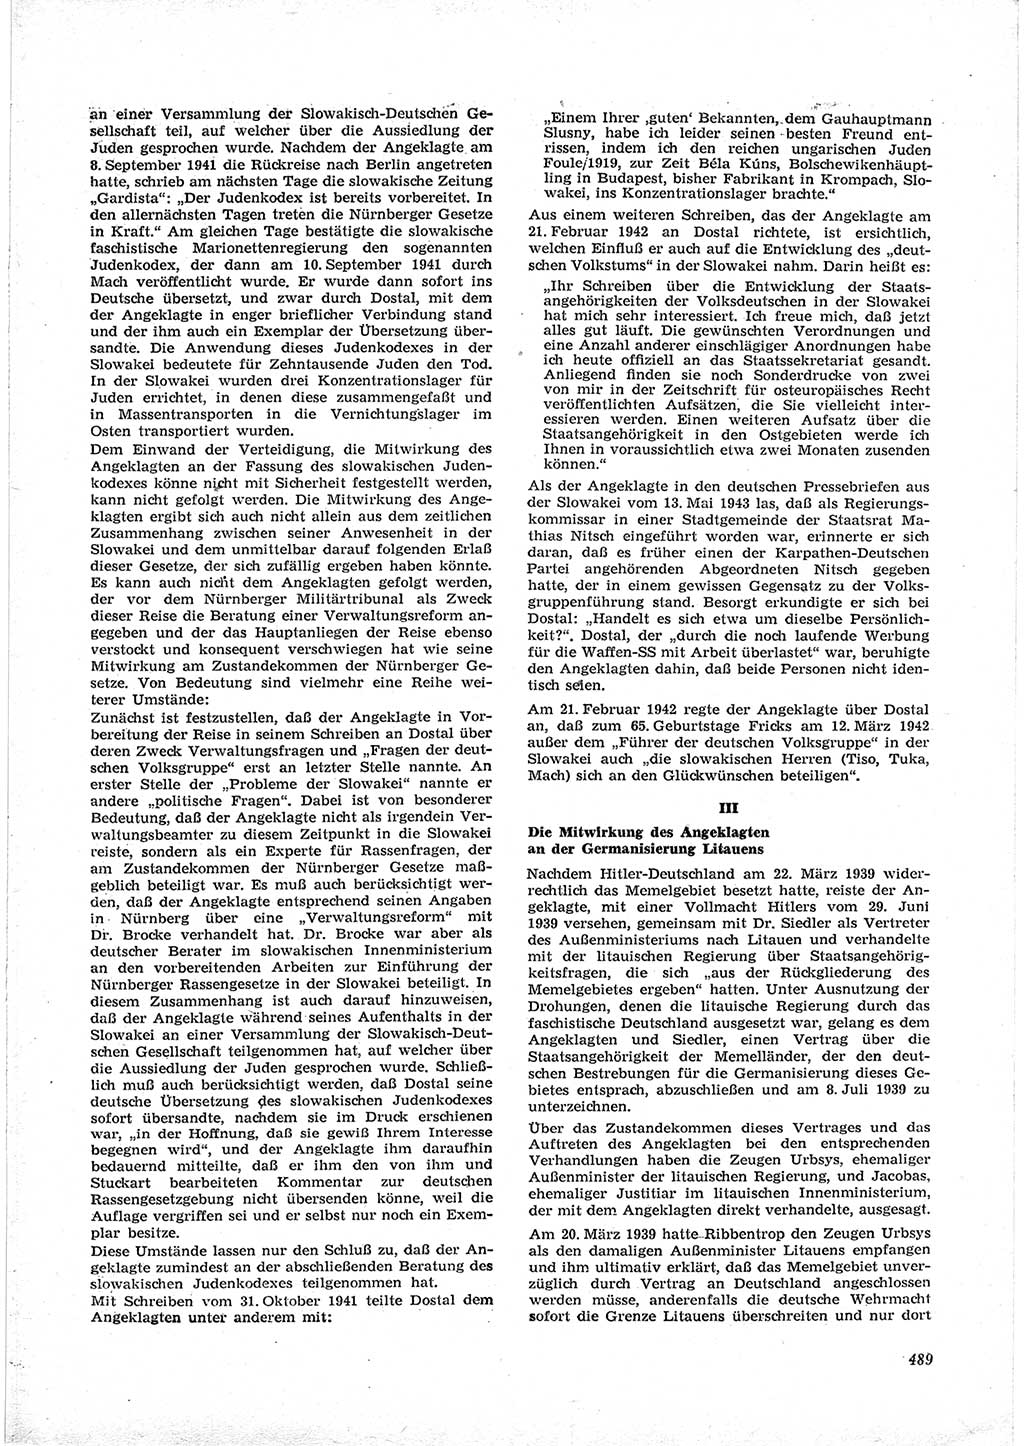 Neue Justiz (NJ), Zeitschrift für Recht und Rechtswissenschaft [Deutsche Demokratische Republik (DDR)], 17. Jahrgang 1963, Seite 489 (NJ DDR 1963, S. 489)